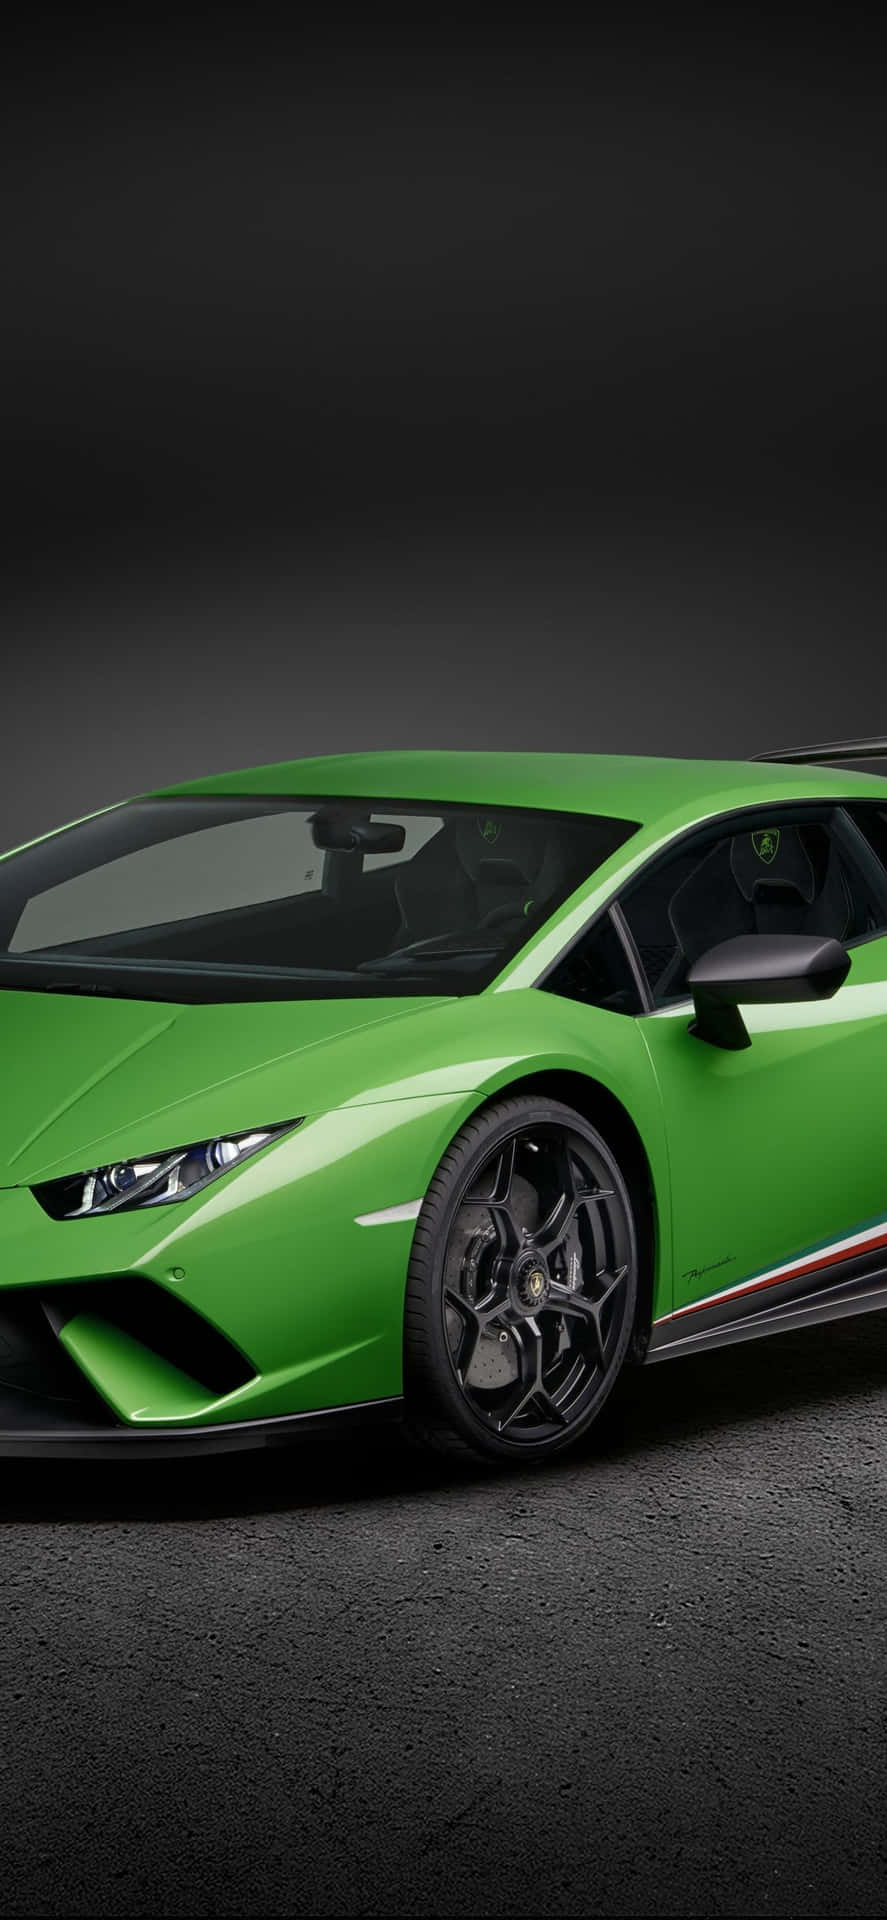 Tag din rejse til næste niveau med en grøn Lamborghini iphone. Wallpaper